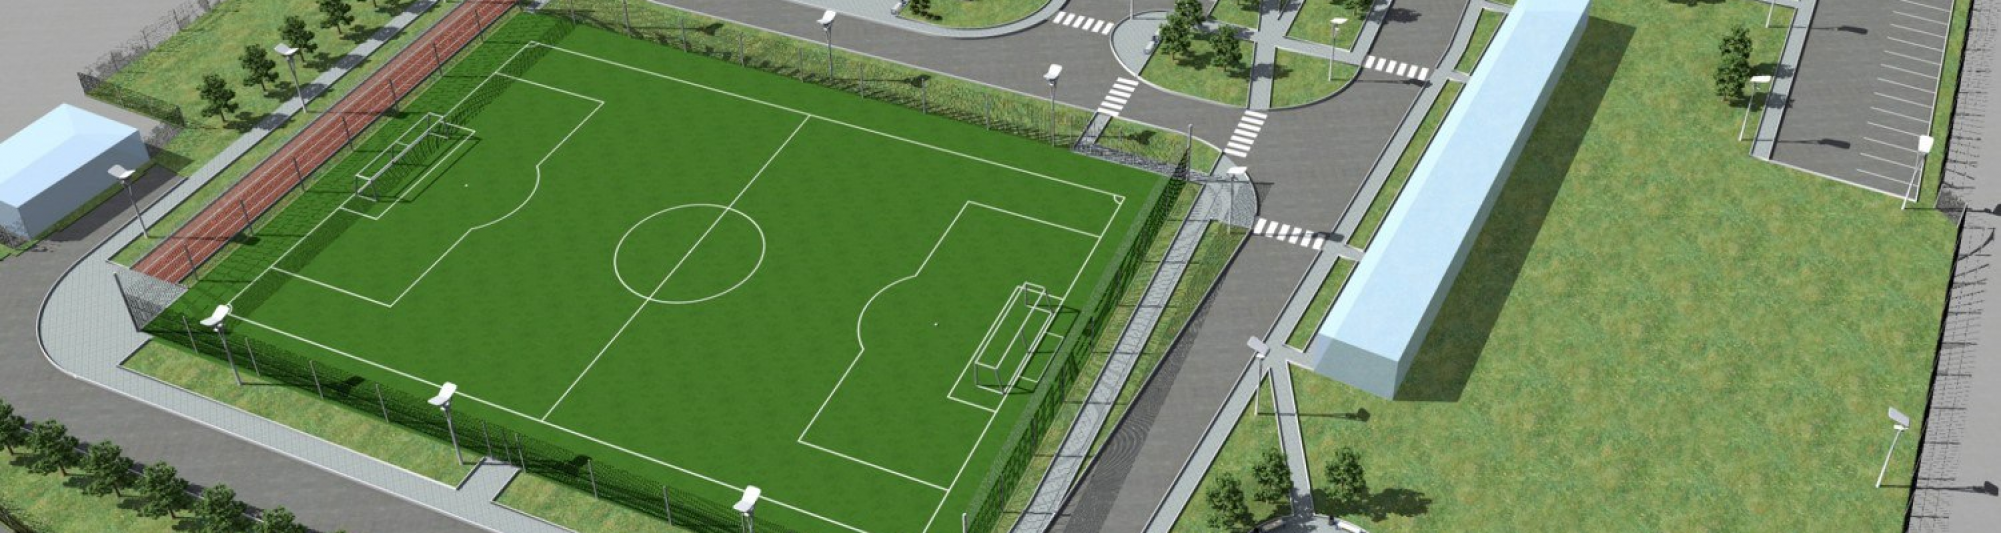 В следующем году начнется проектирование дворца спорта имени С.А. Белова